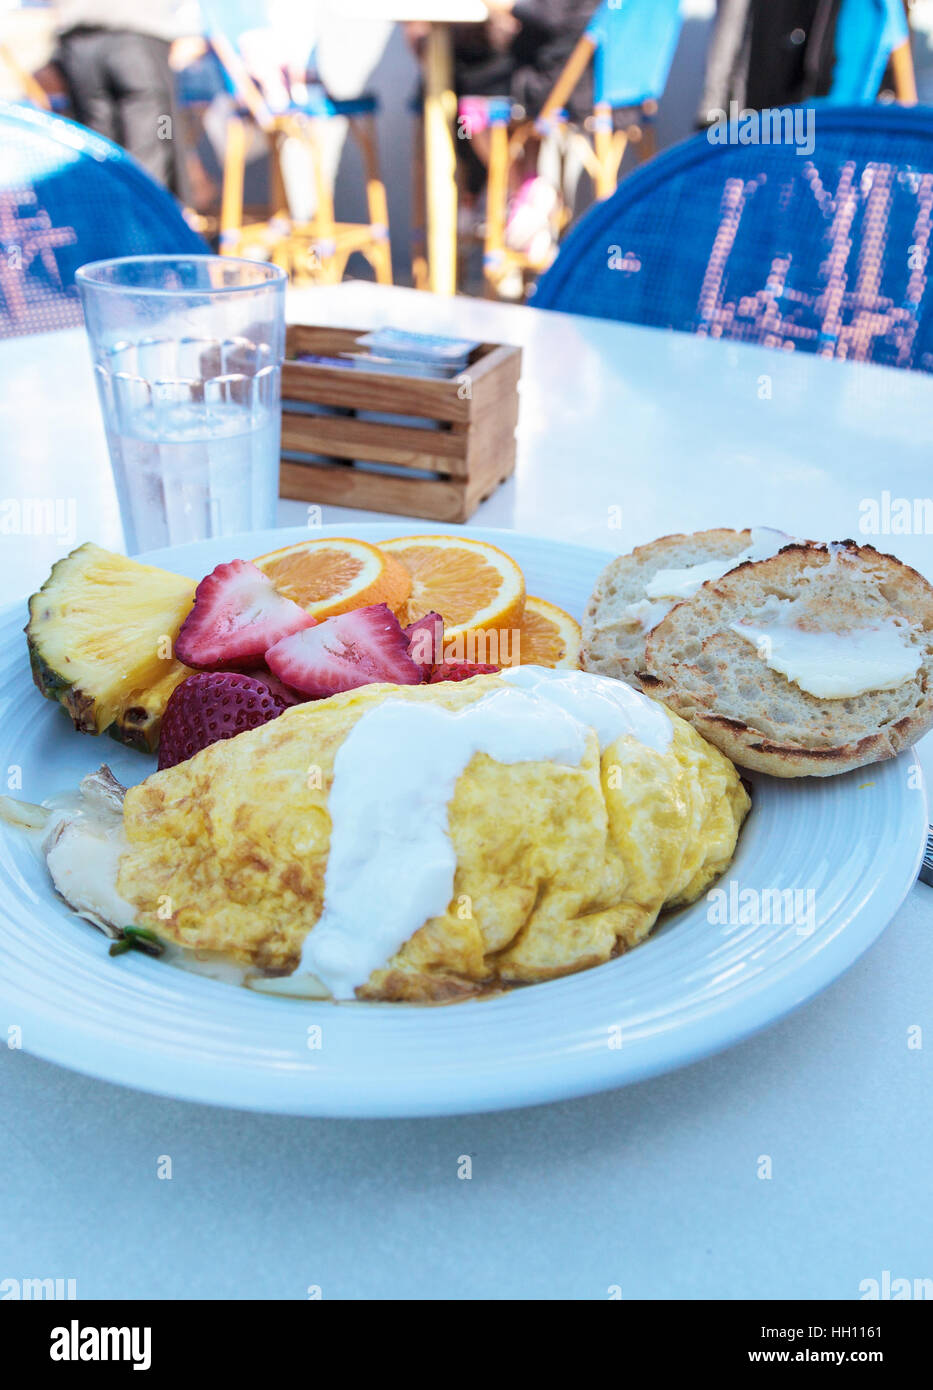 Frühstück Omelette mit Käse, eine englische Muffins mit Butter und Obst, wie Ananas, Orangenscheiben und Erdbeeren. Stockfoto